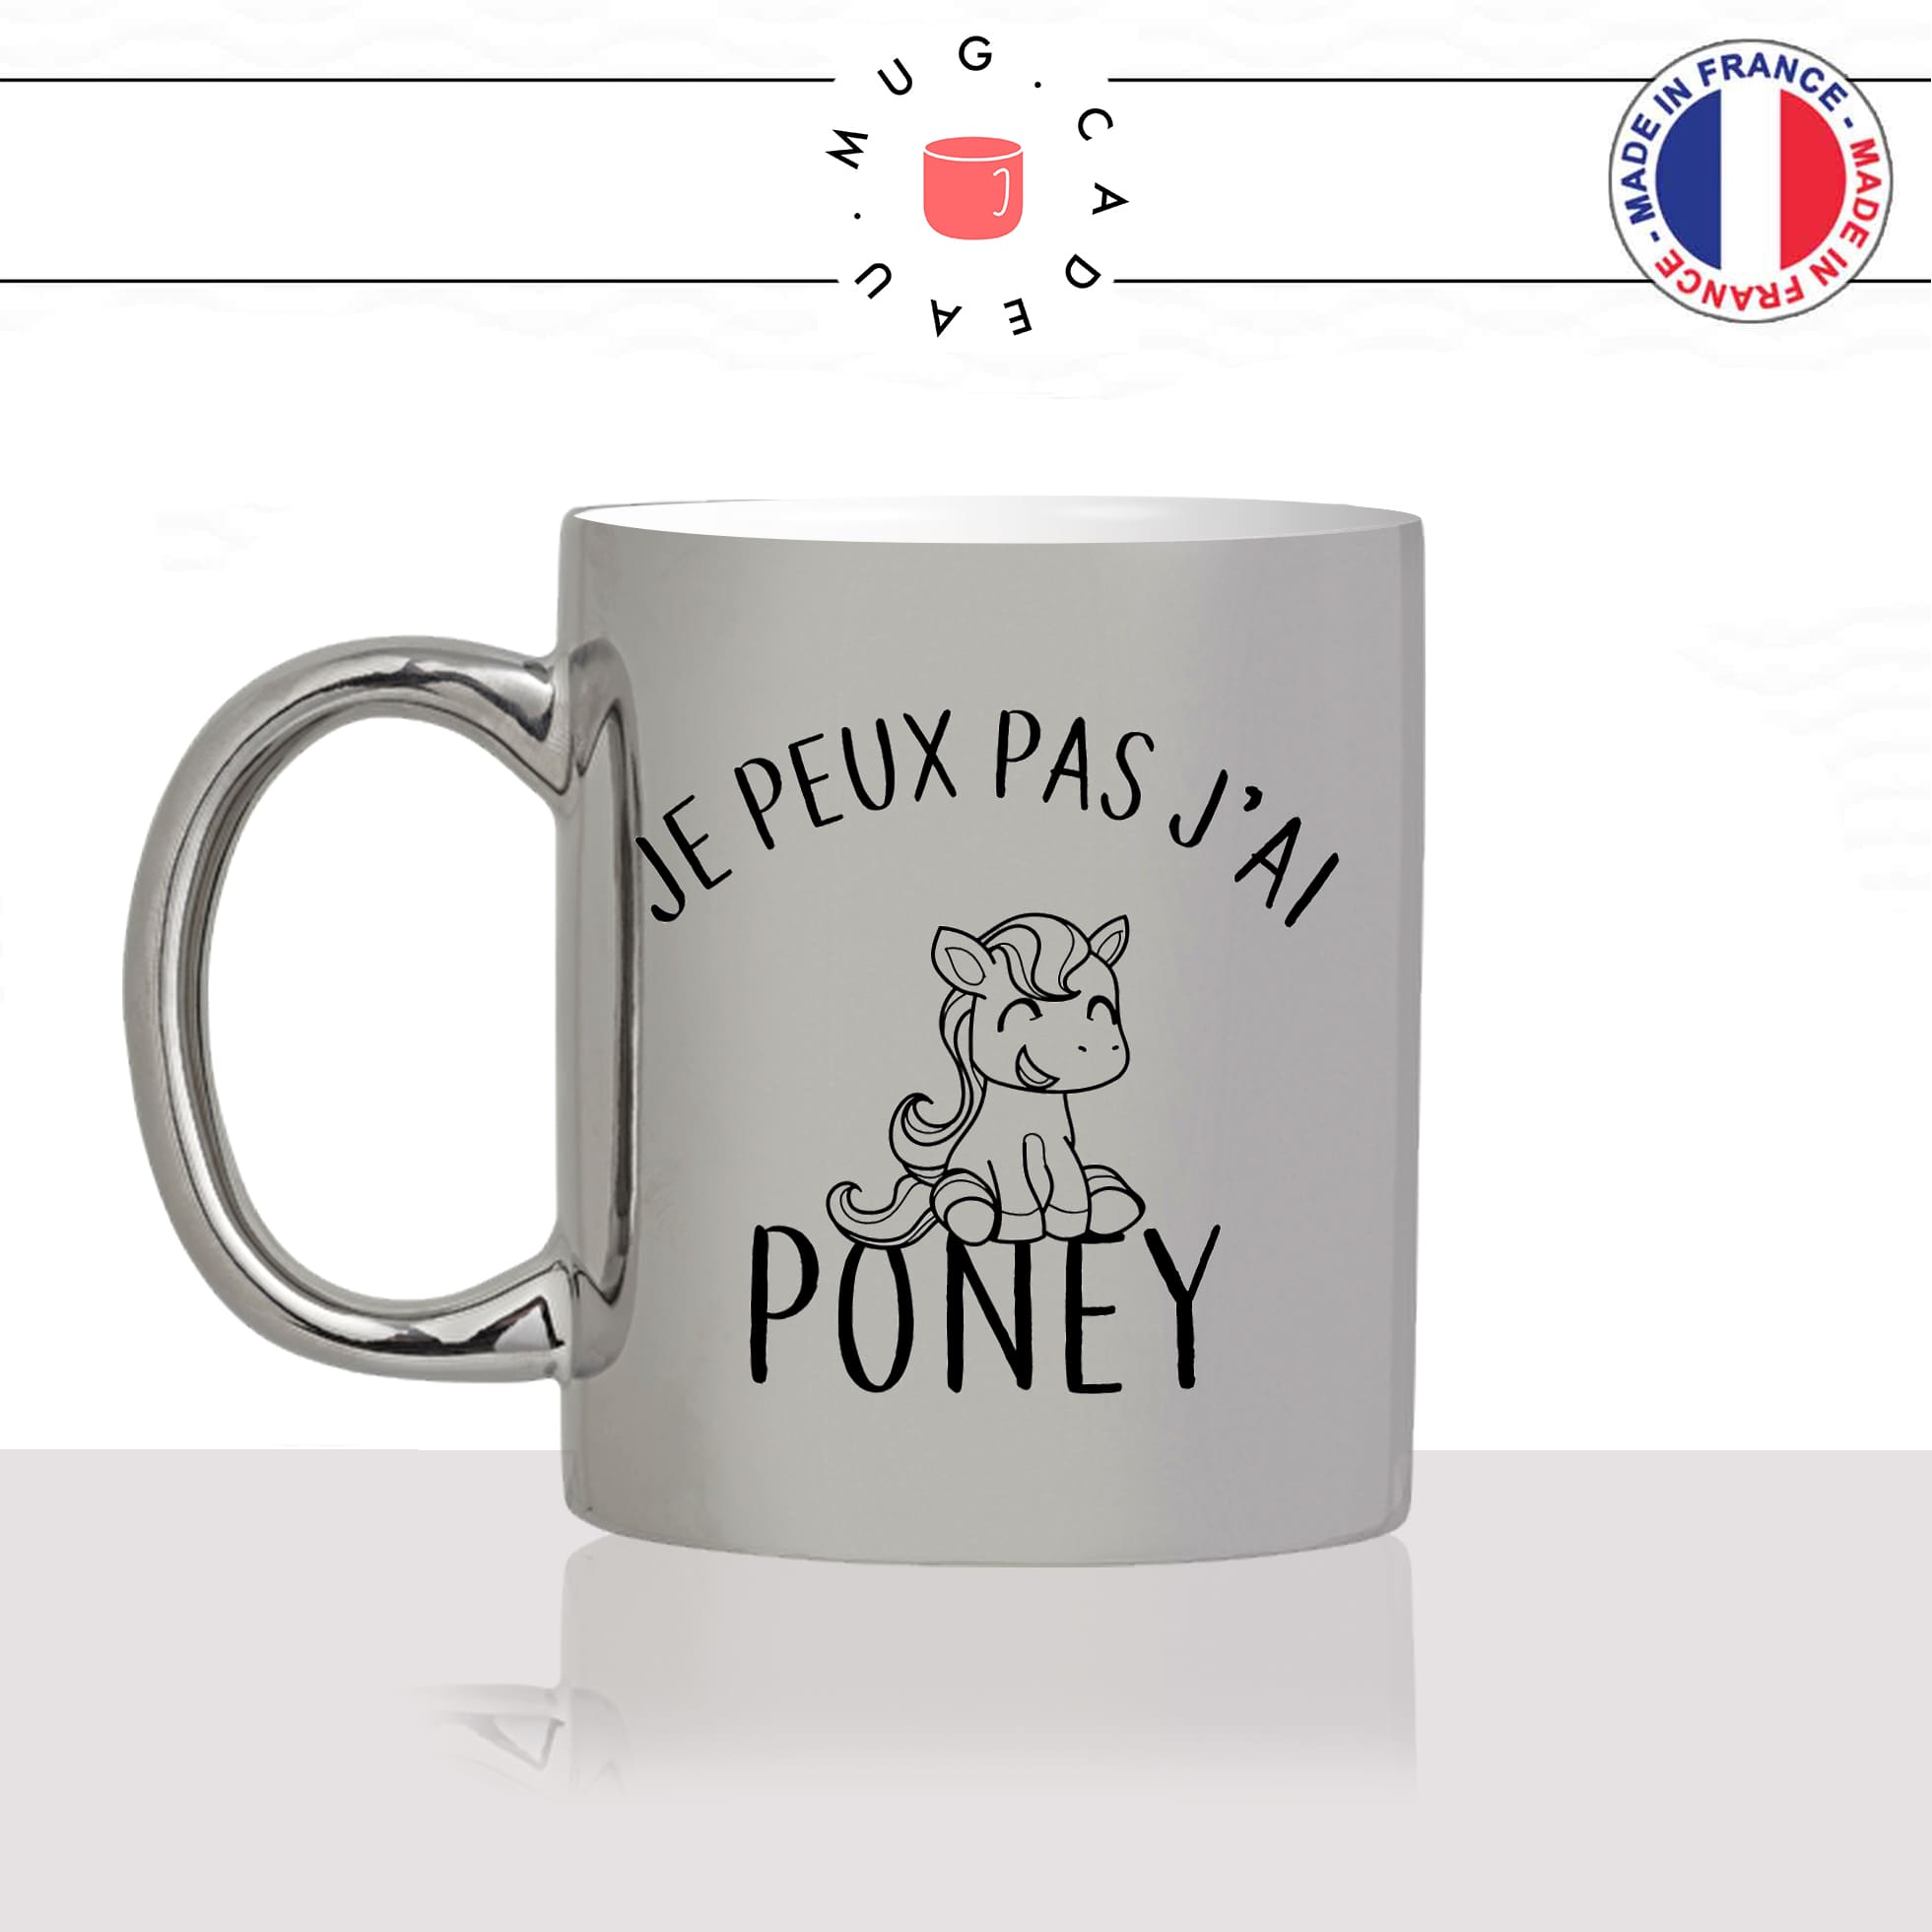 mug-tasse-argent-argenté-silver-jpeux-pas-jai-poney-cheval-cavalier-equitation-mignon-humour-stylé-sport-idée-cadeau-fun-cool-café-thé